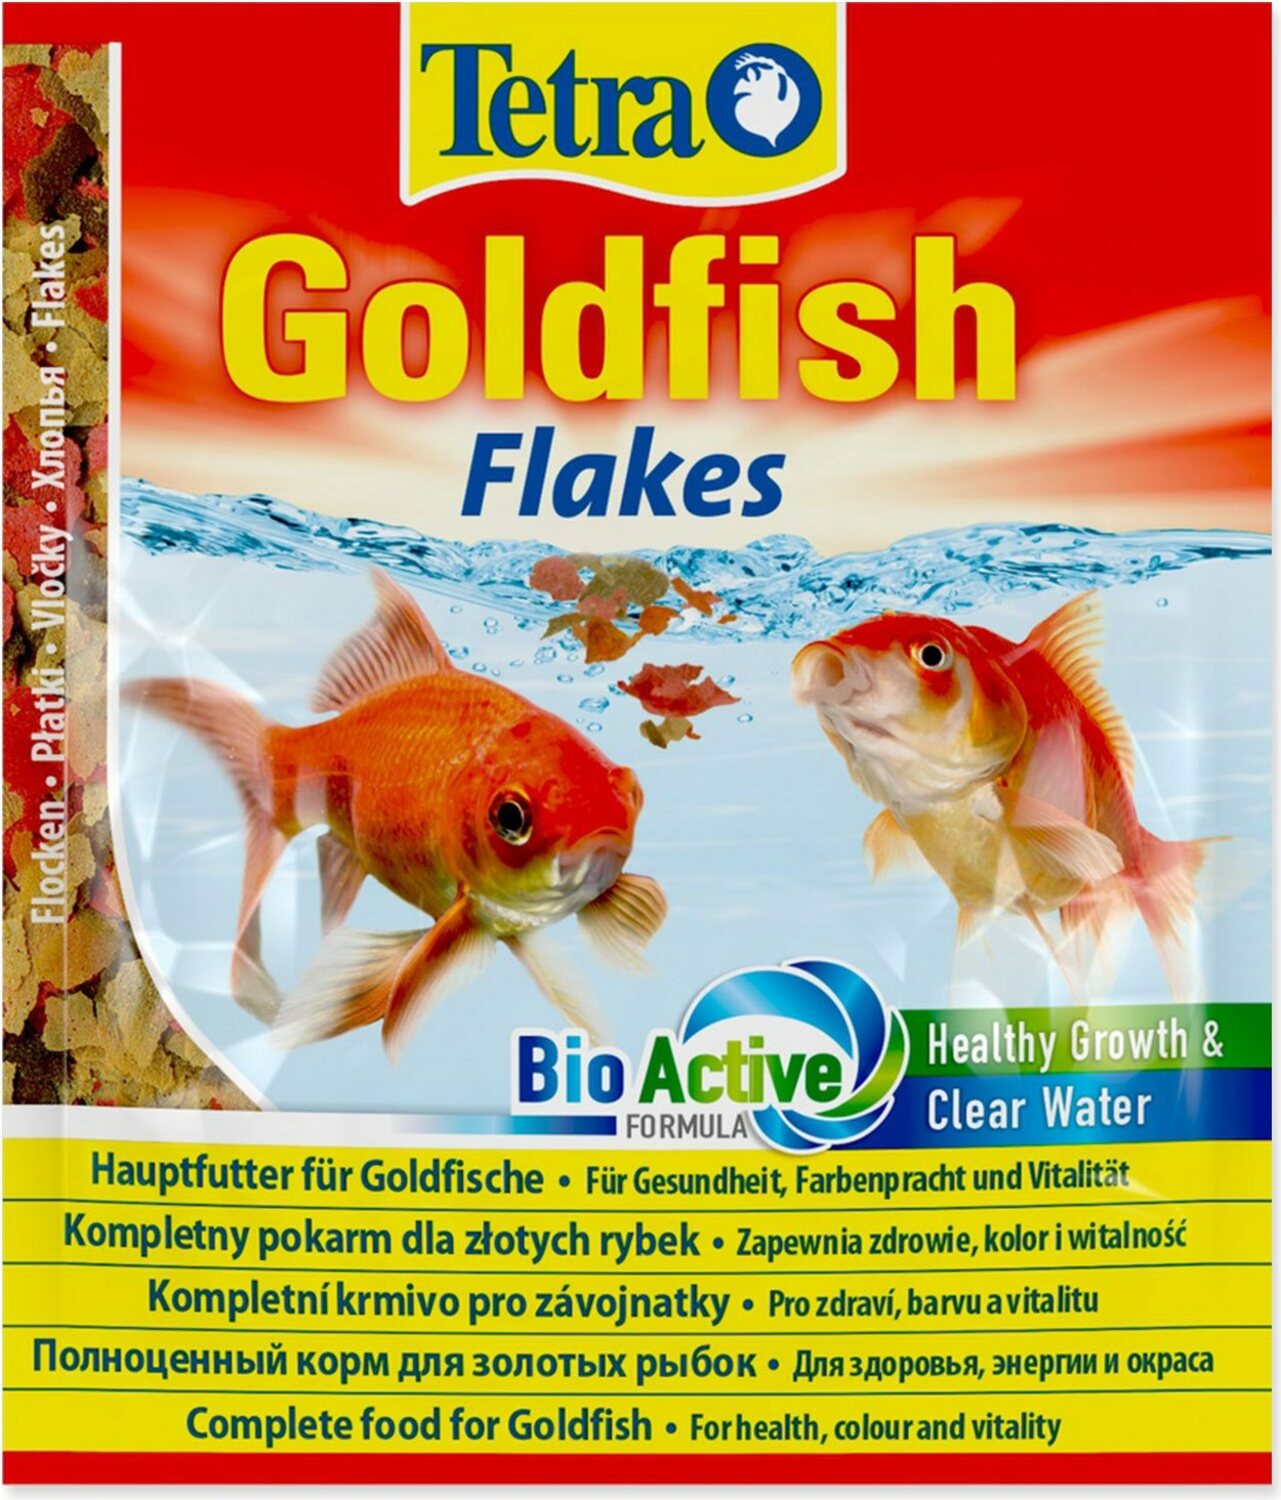 Krmivo Tetra Goldfish vločky sáček 12g